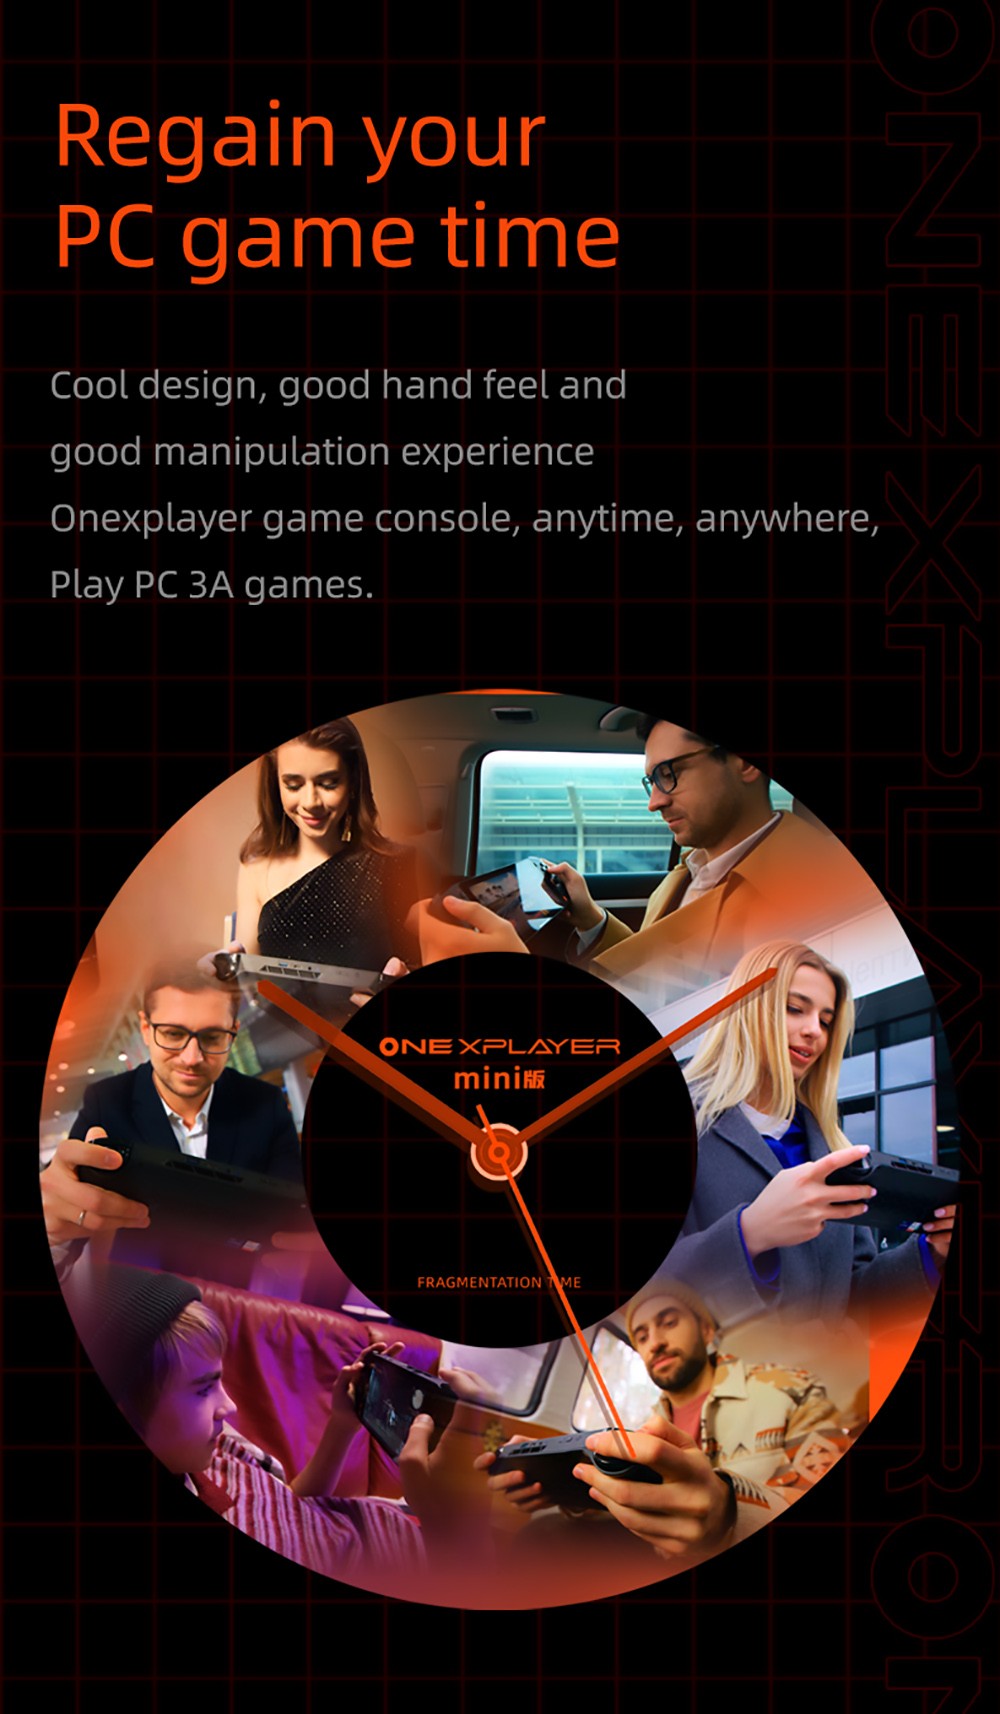 ONE Netbook ONEXPlayer Mini Game Console 7 Inches Touch screen AMD Ryzen 7 5800U CPU, 16GB RAM 2TB SSD WiFi6